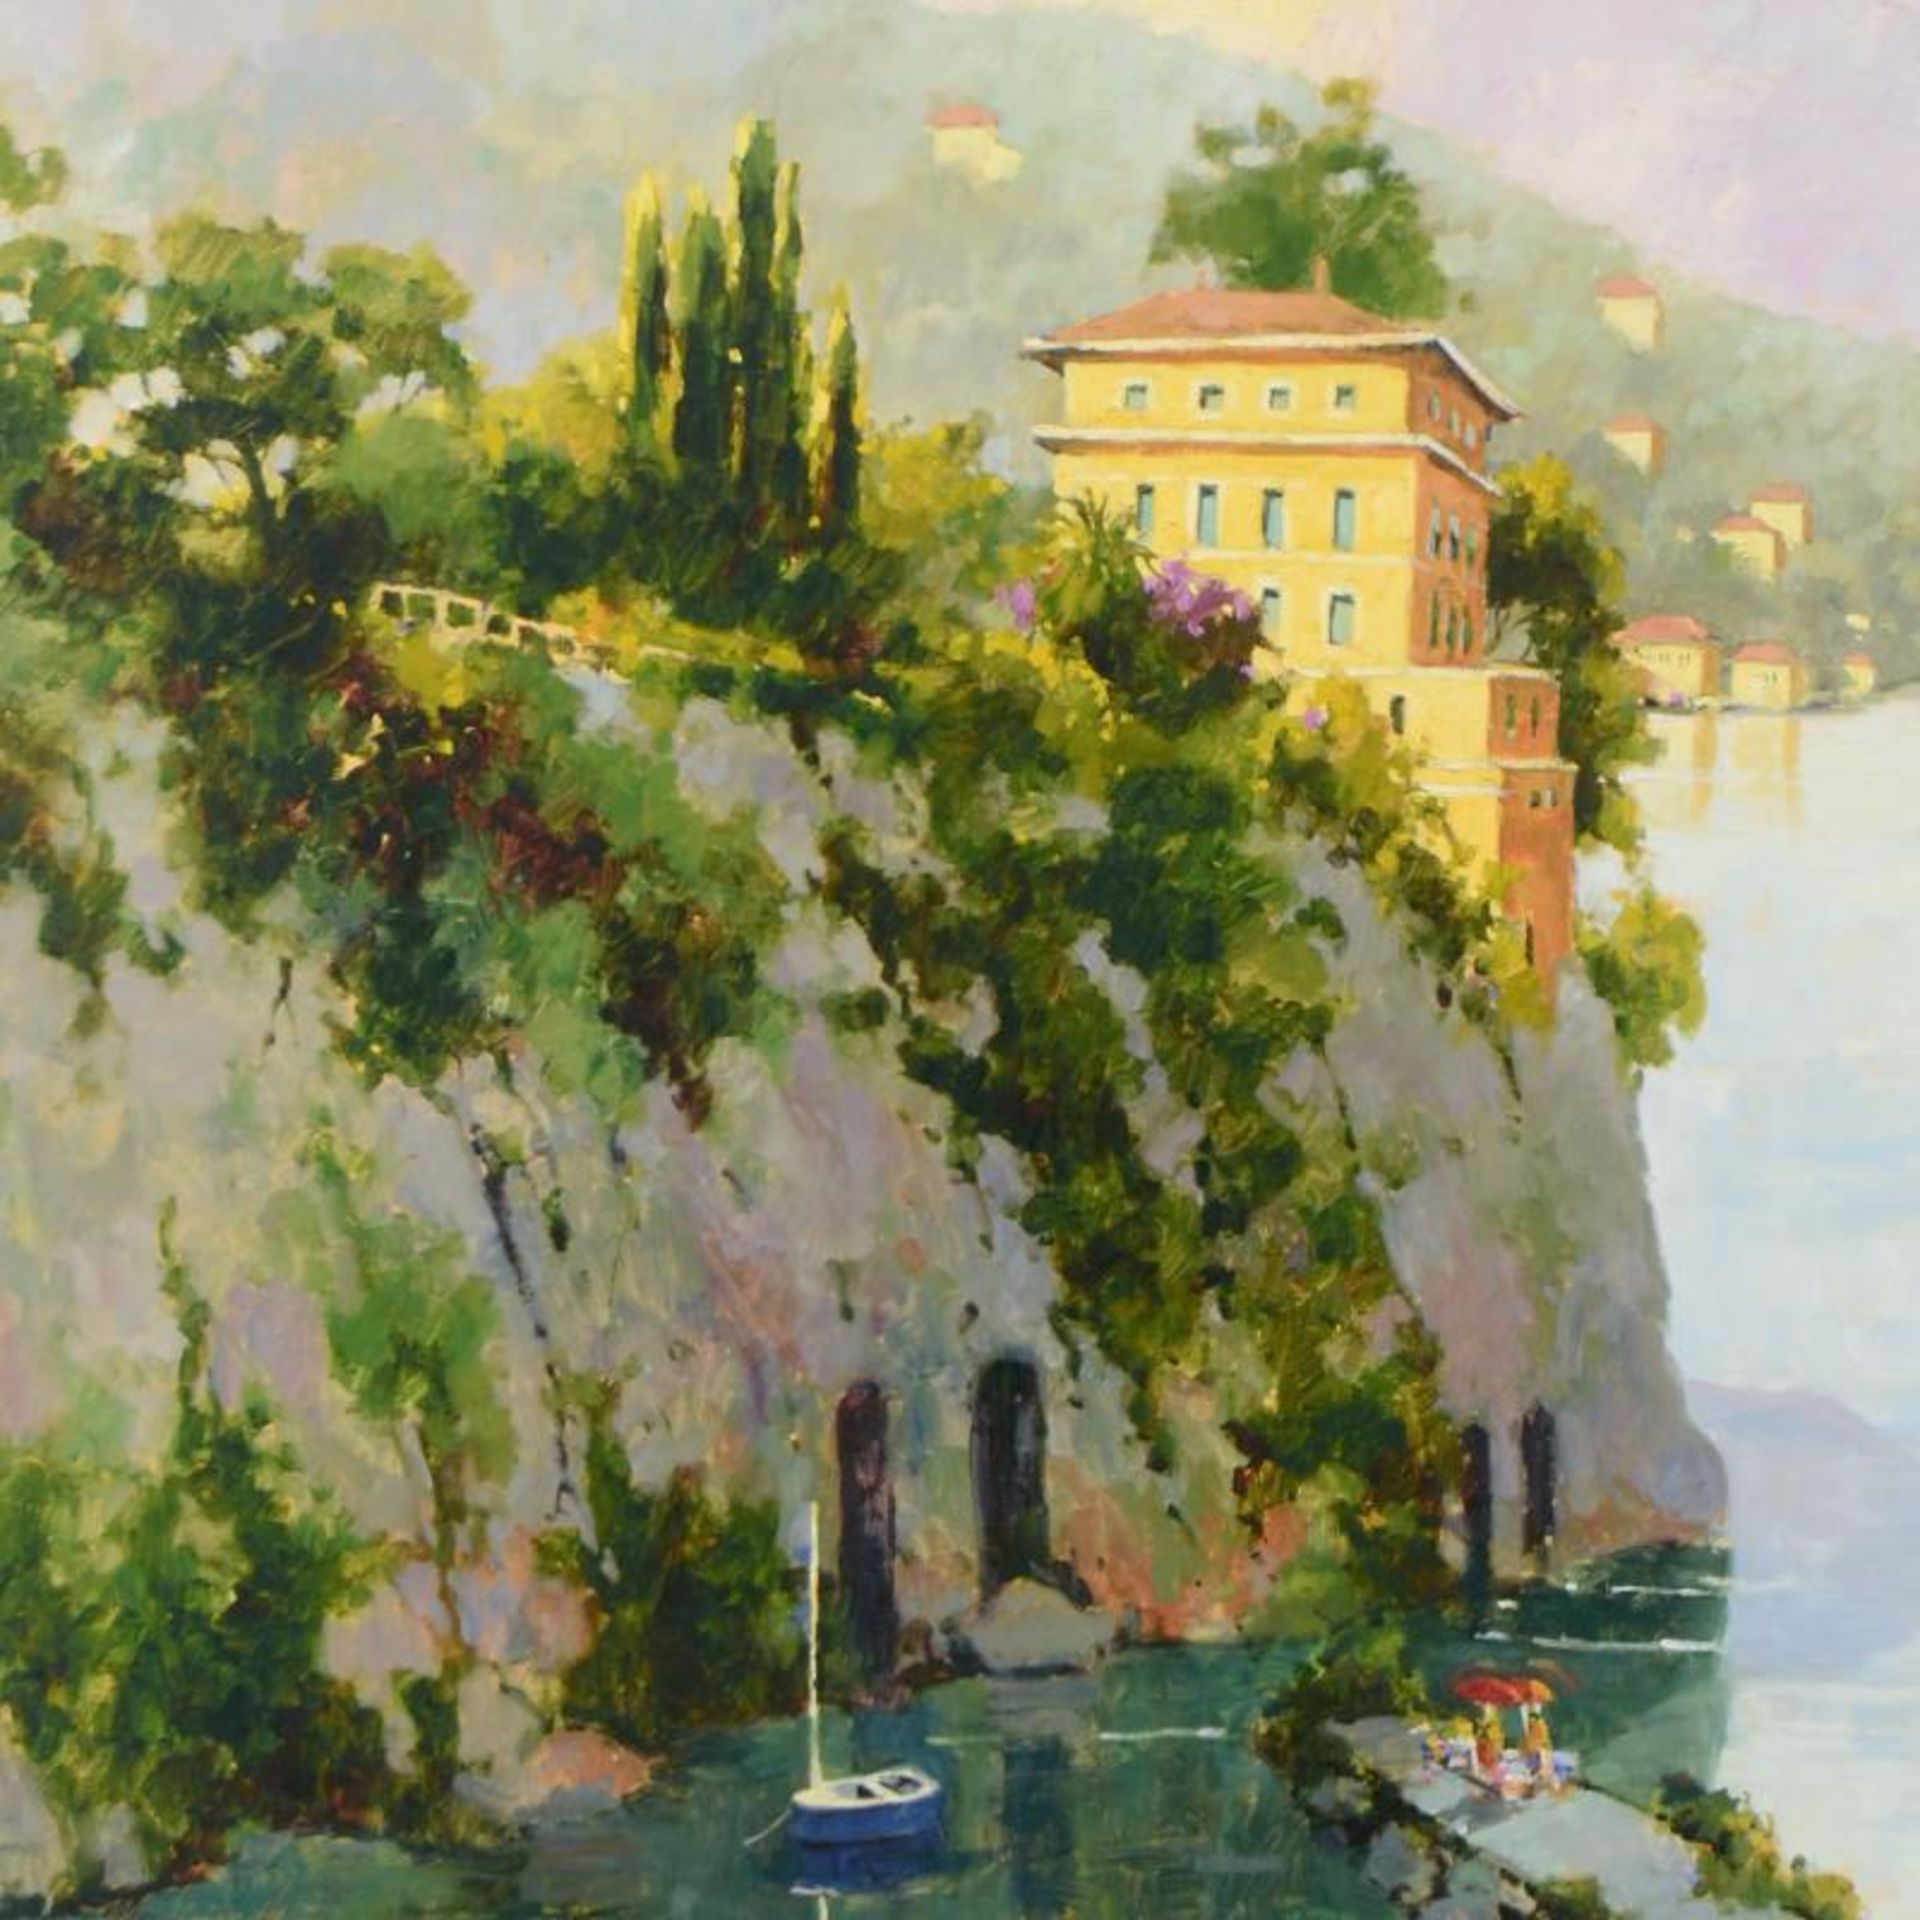 Amalfi by Simandle, Marilyn - Image 2 of 2